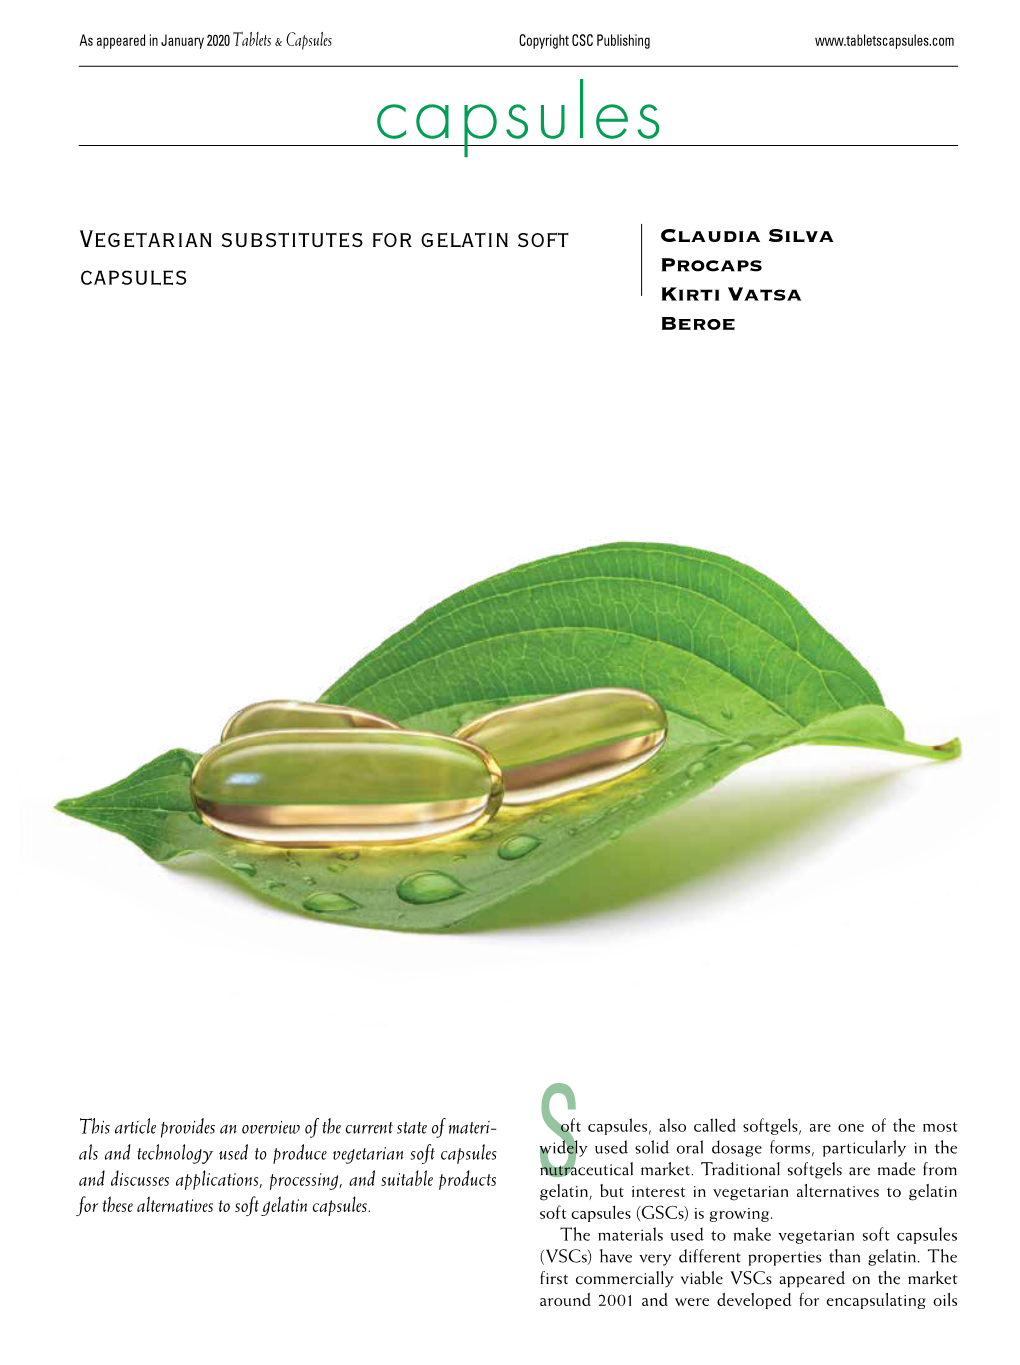 Vegetarian Substitutes for Gelatin Soft Capsules